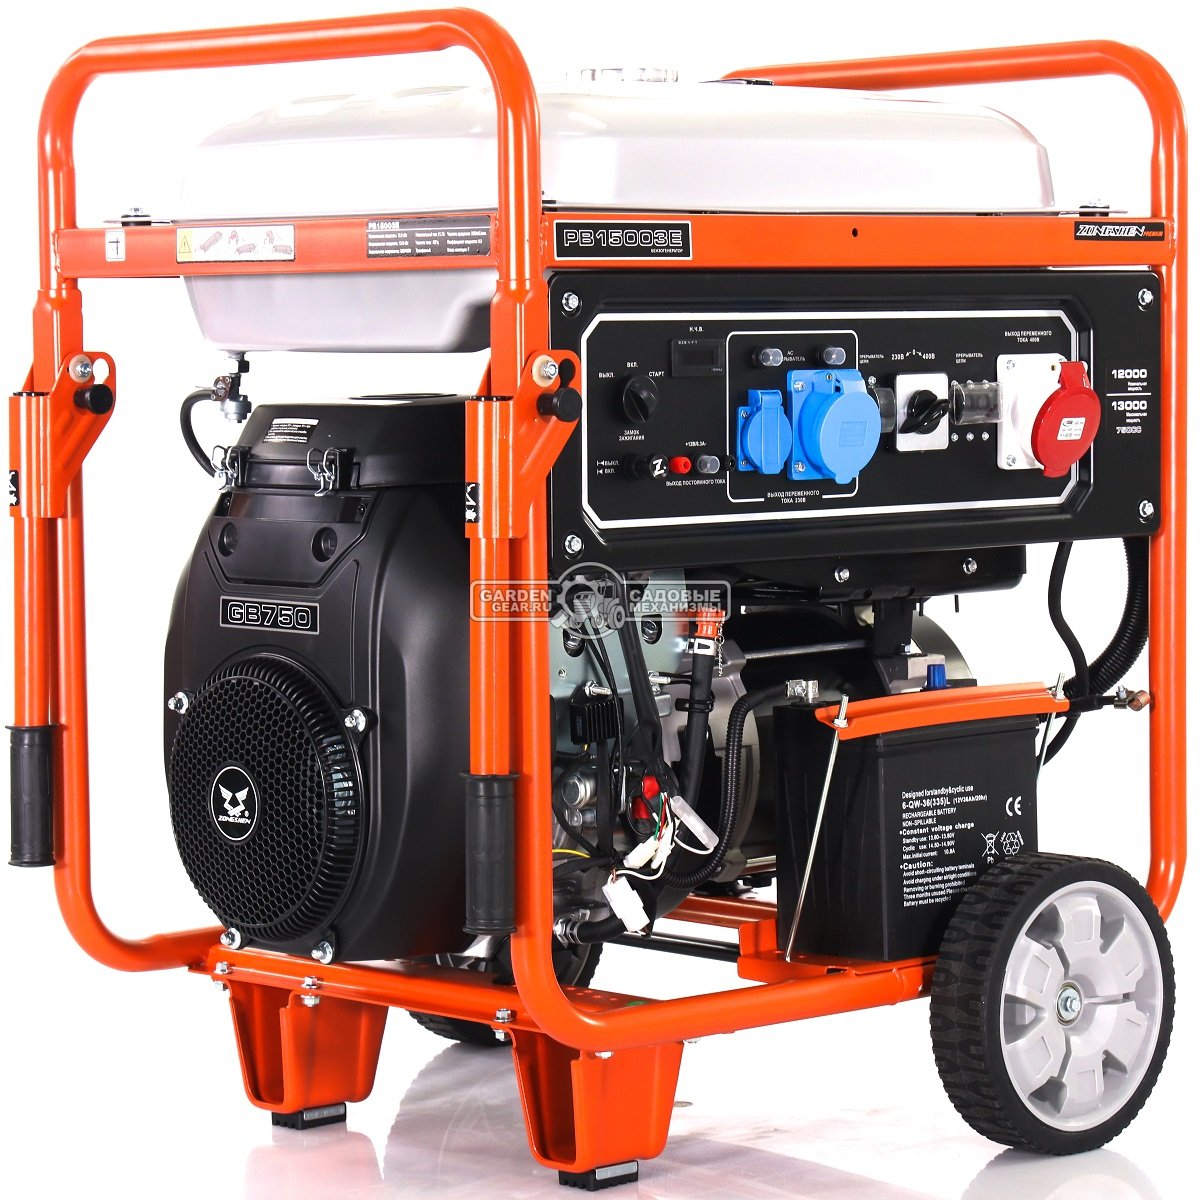 Бензиновый генератор Zongshen PB 15003 E трехфазный (PRC, 750 см3, 12.0/13.0 кВт, 55 л, электростарт, колеса, 157 кг)